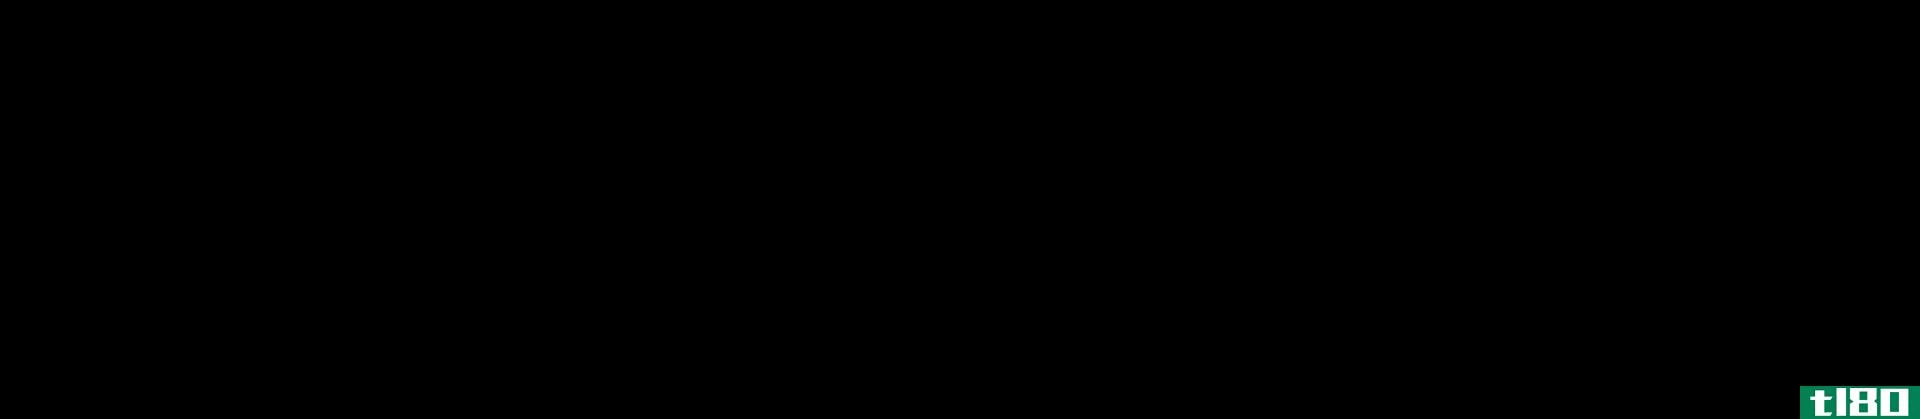 氧化的(oxidative)和非氧化磷酸戊糖途径(nonoxidative pentose phosphate pathway)的区别